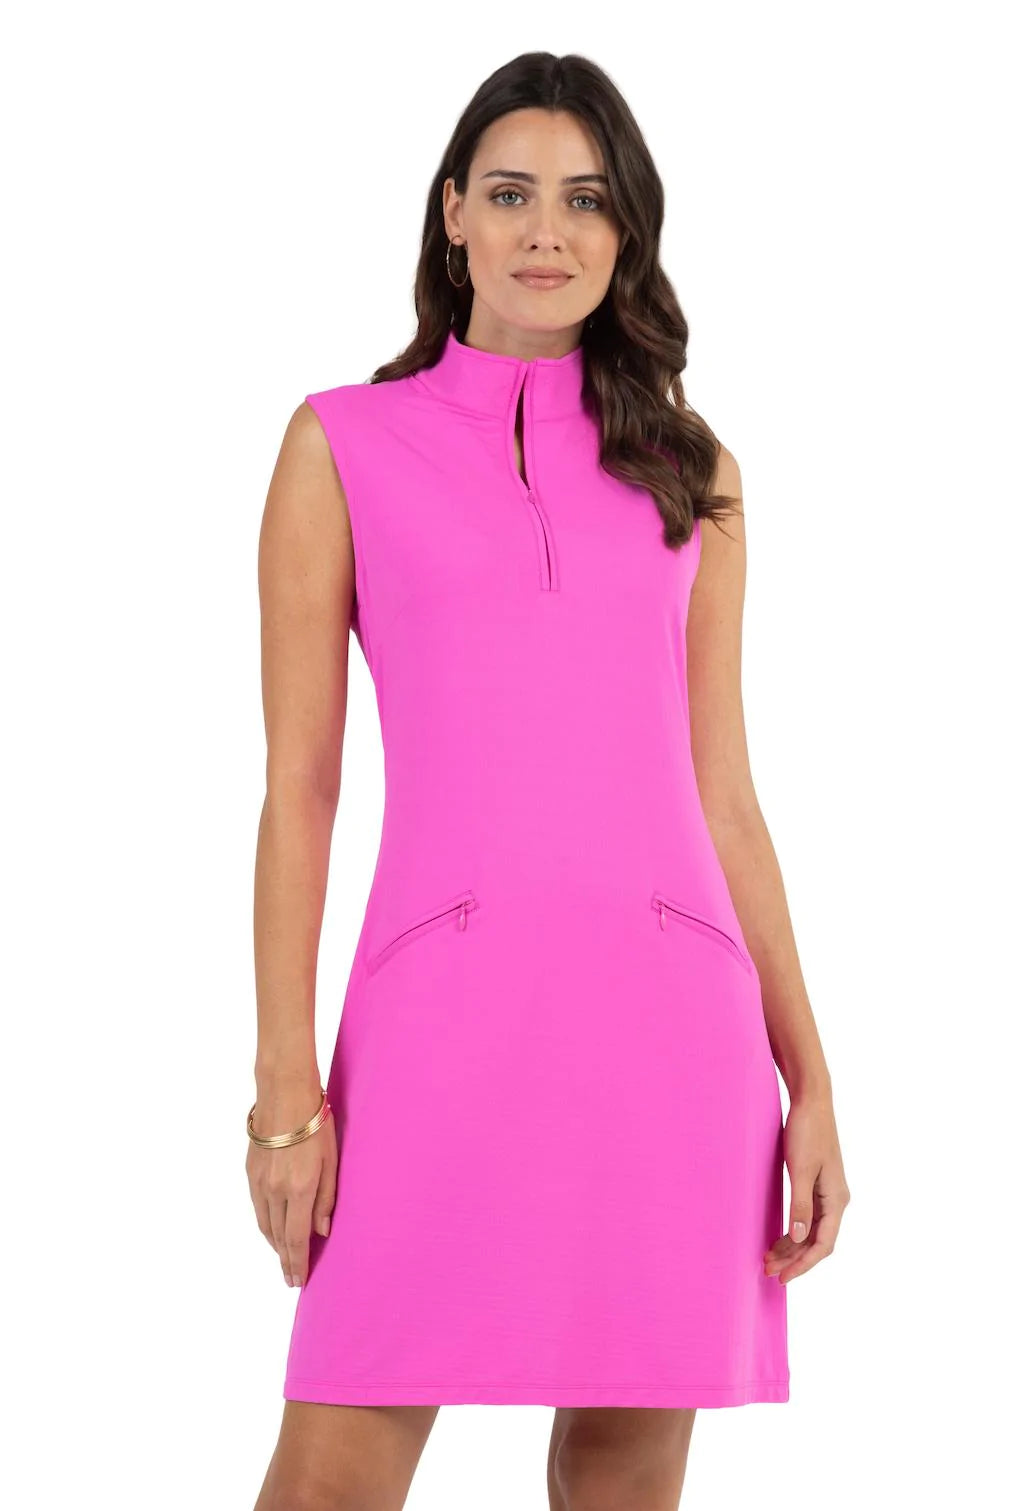 IBKUL- Sleeveless Hot Pink Dress (Style#: 58000)